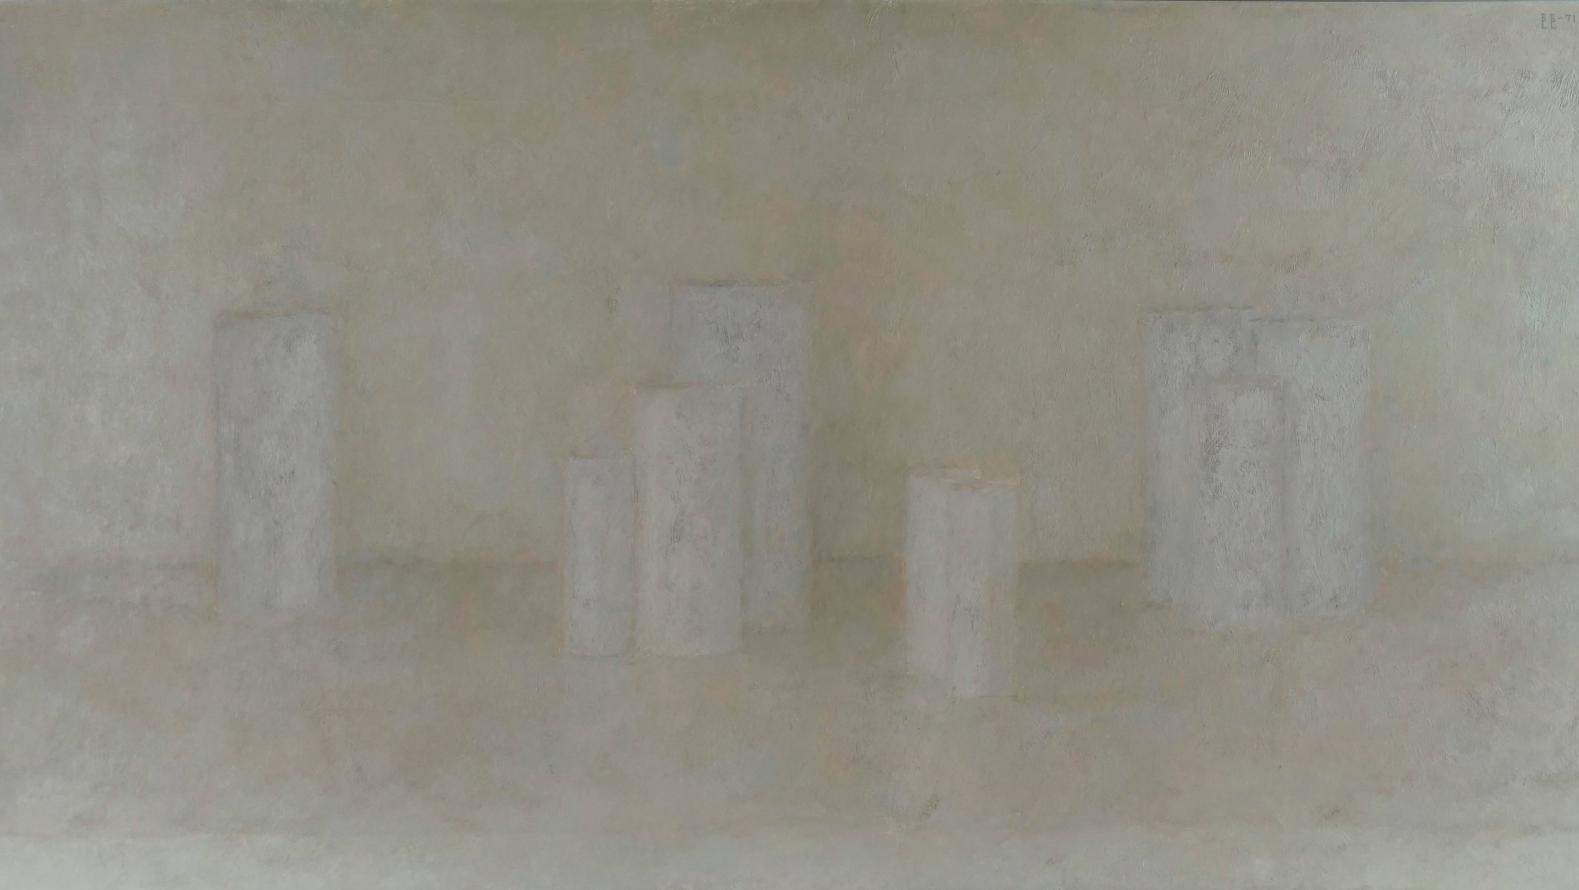 Vladimir Grigorievic Weisberg (1924-1985), Composition, 1971, huile sur toile monogrammée... Révolutionnaires avant-gardes russes 